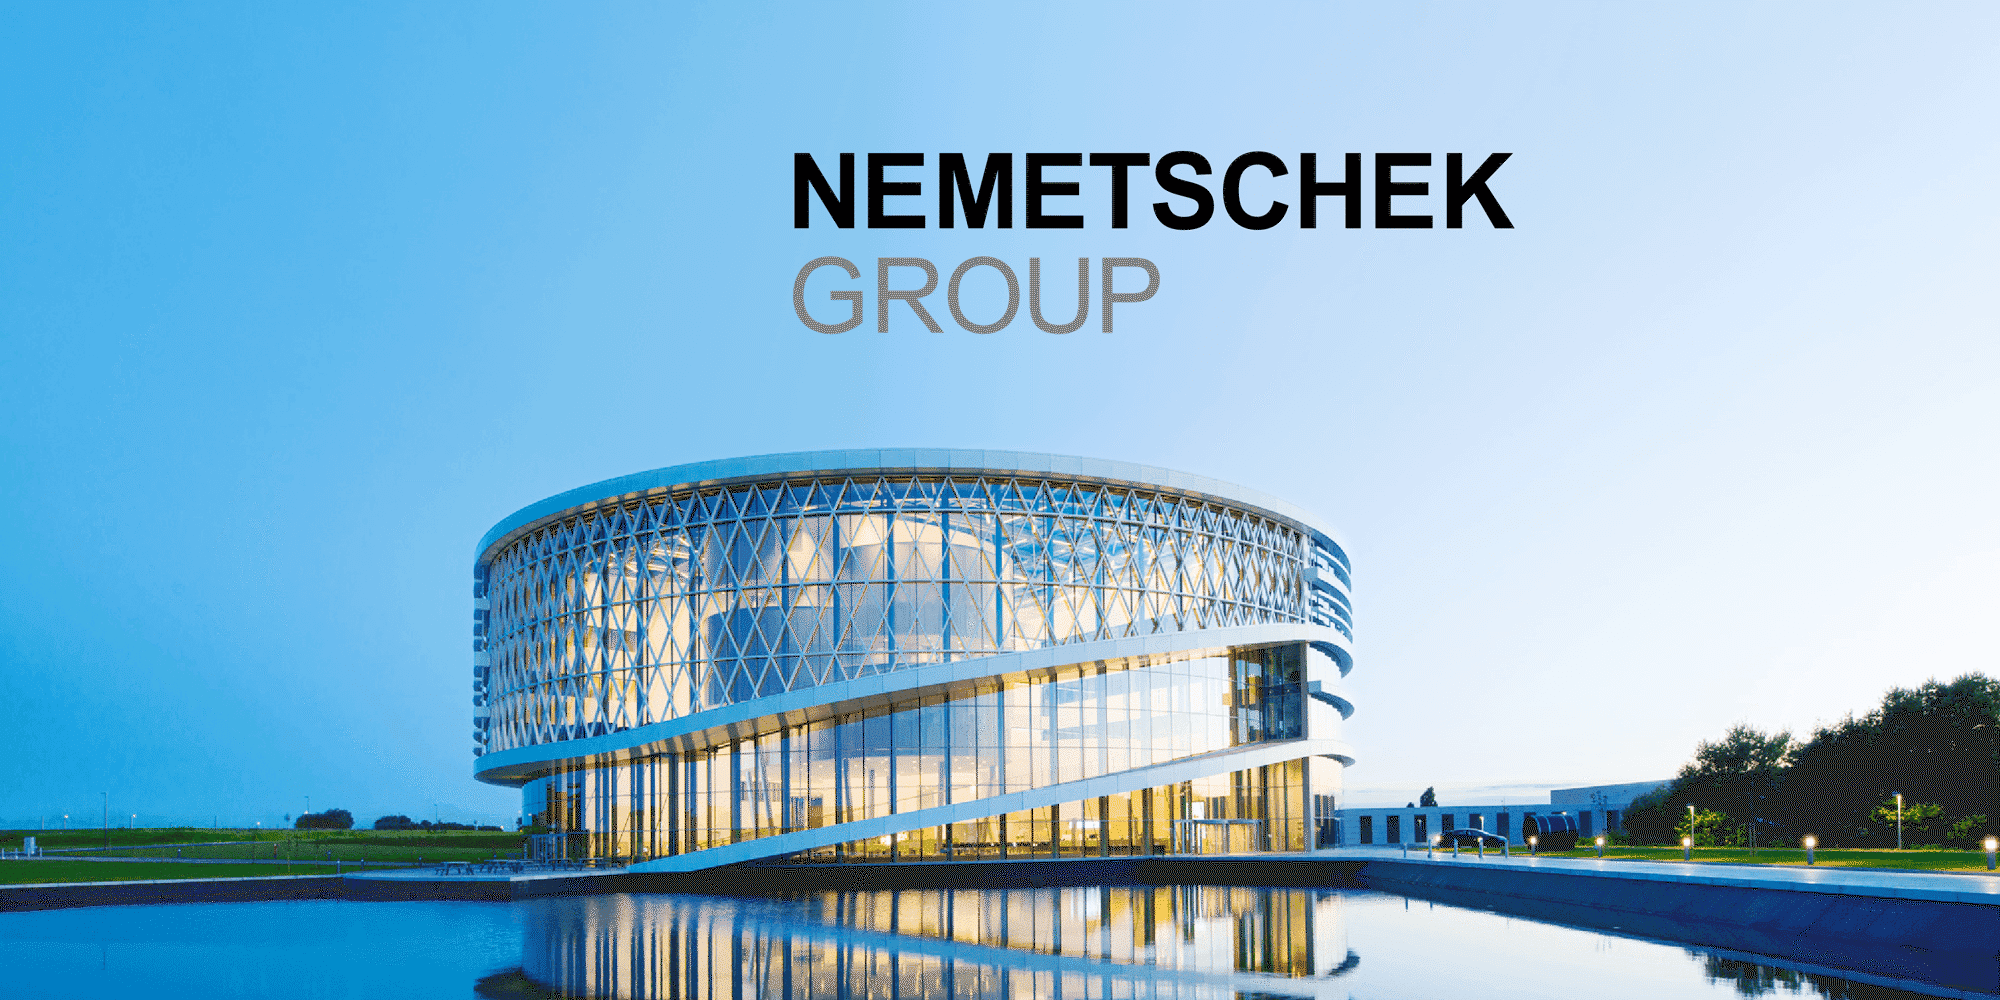 Nemetschek Aktienanalyse — Mittelständischer Softwarechampion in der Baubranche setzt voll auf Kundenfokus und Innovation